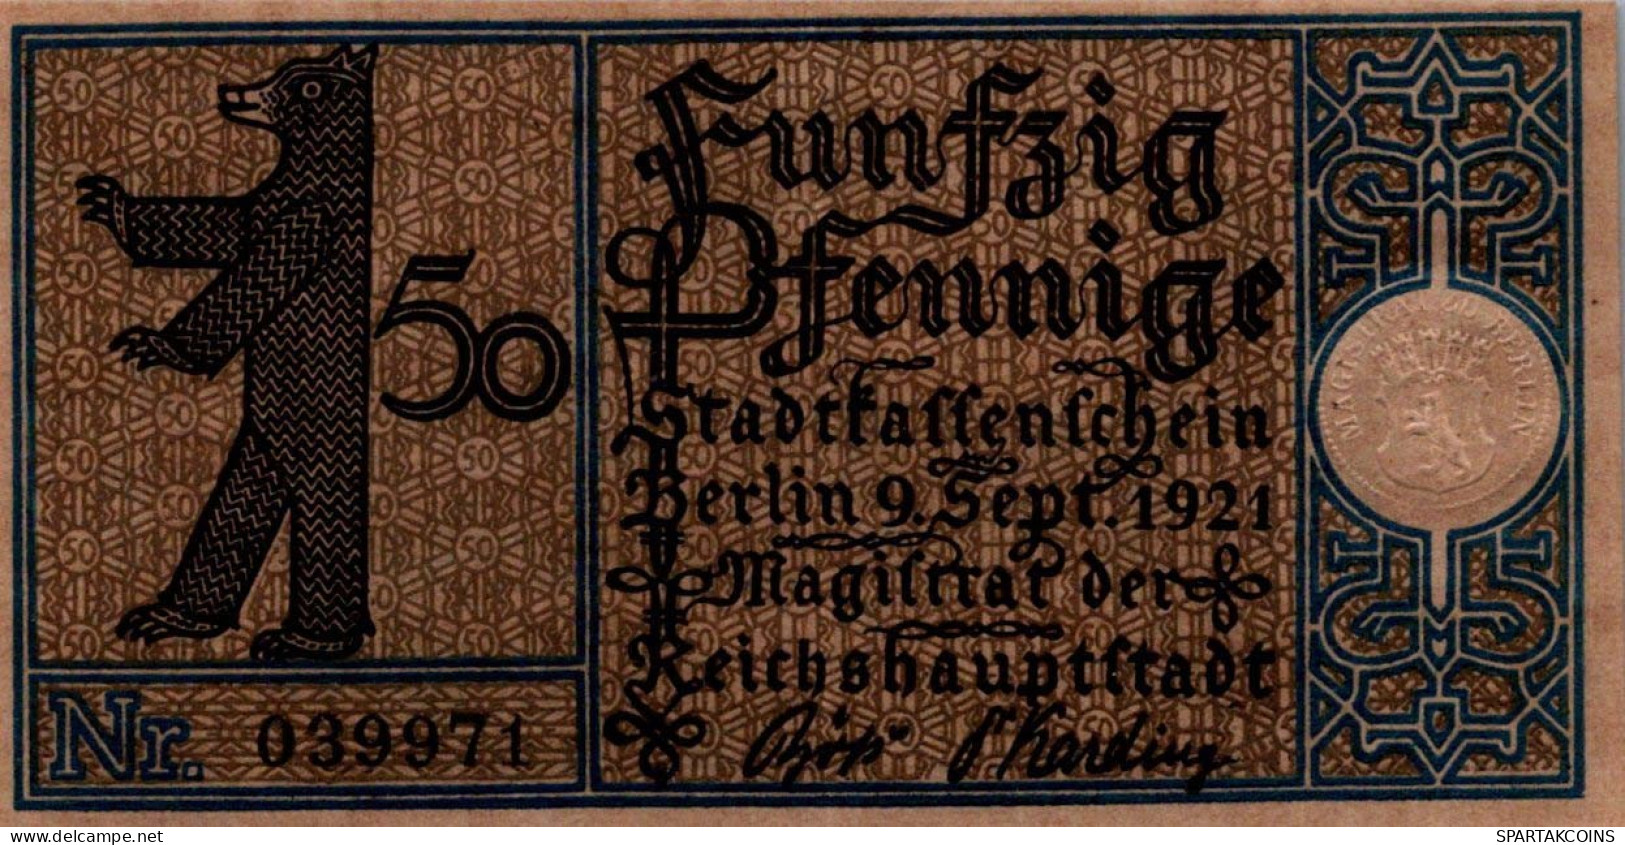 50 PFENNIG 1921 Stadt BERLIN UNC DEUTSCHLAND Notgeld Banknote #PA189 - [11] Local Banknote Issues